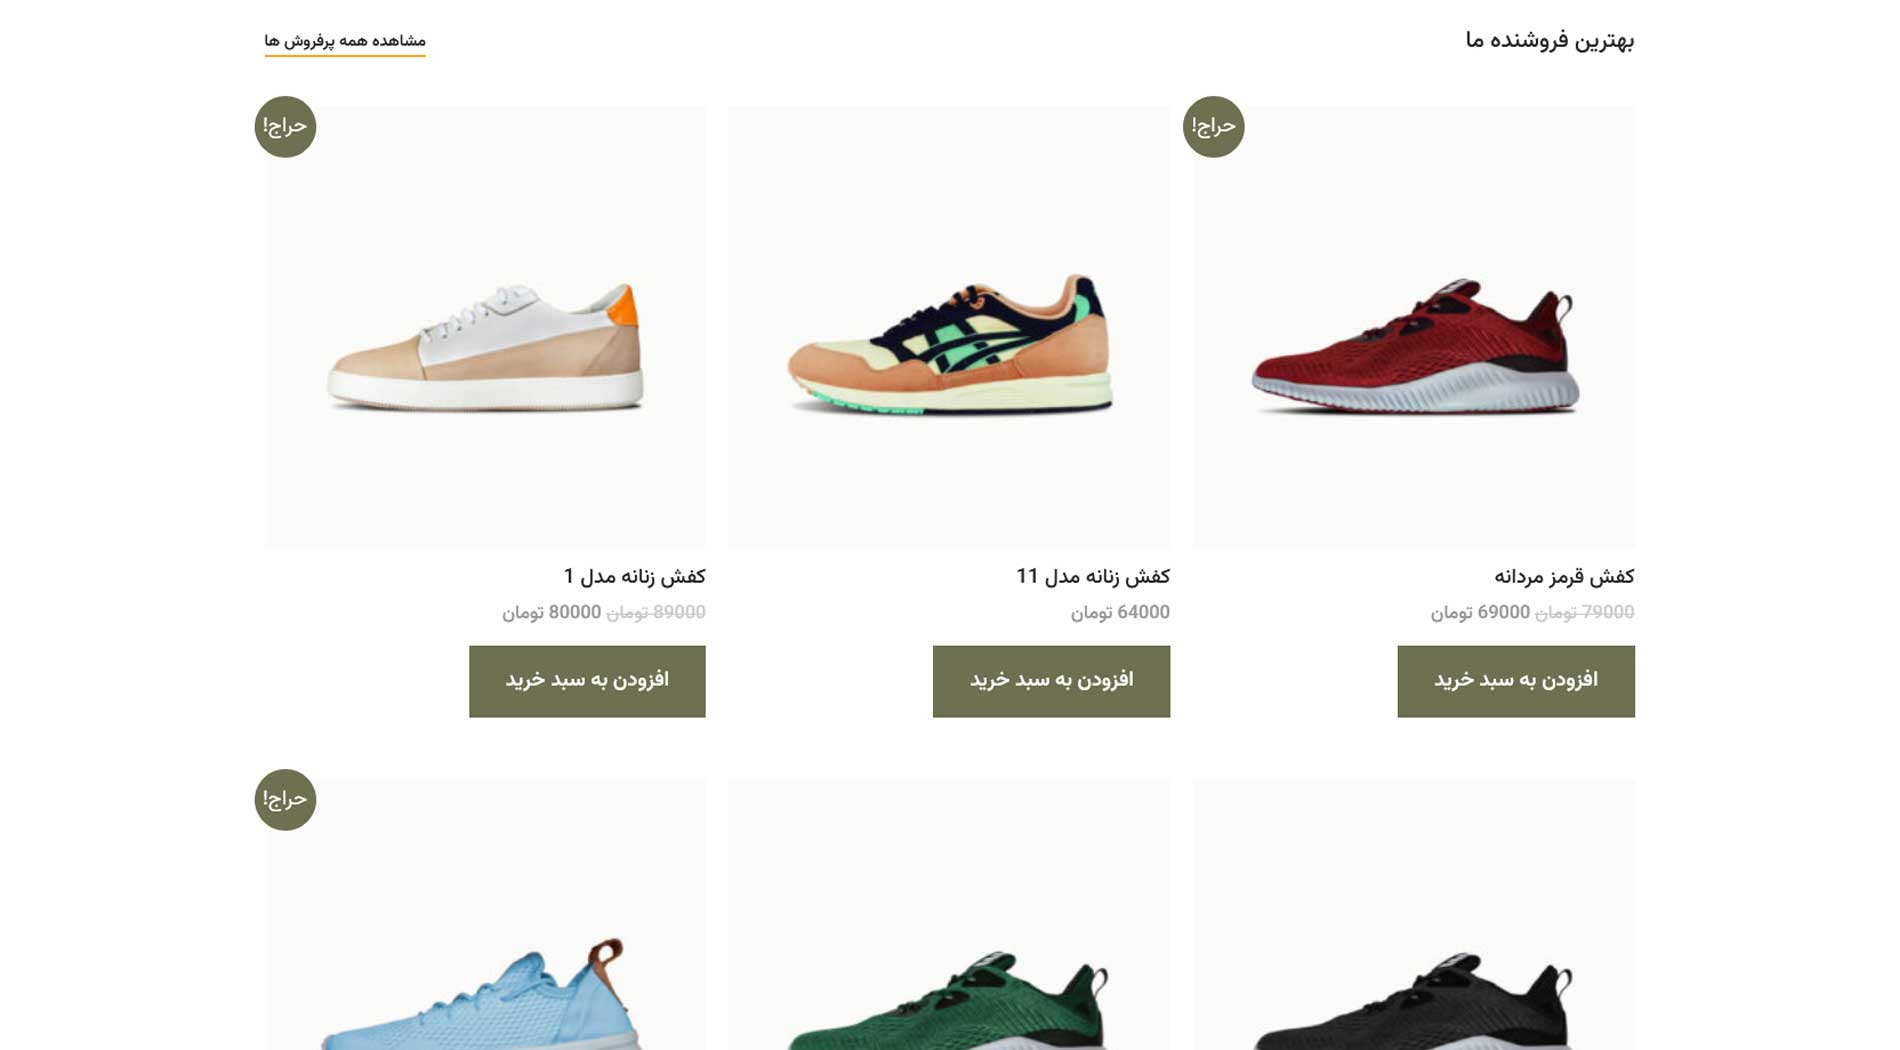 طراحی سایت فروش کفش